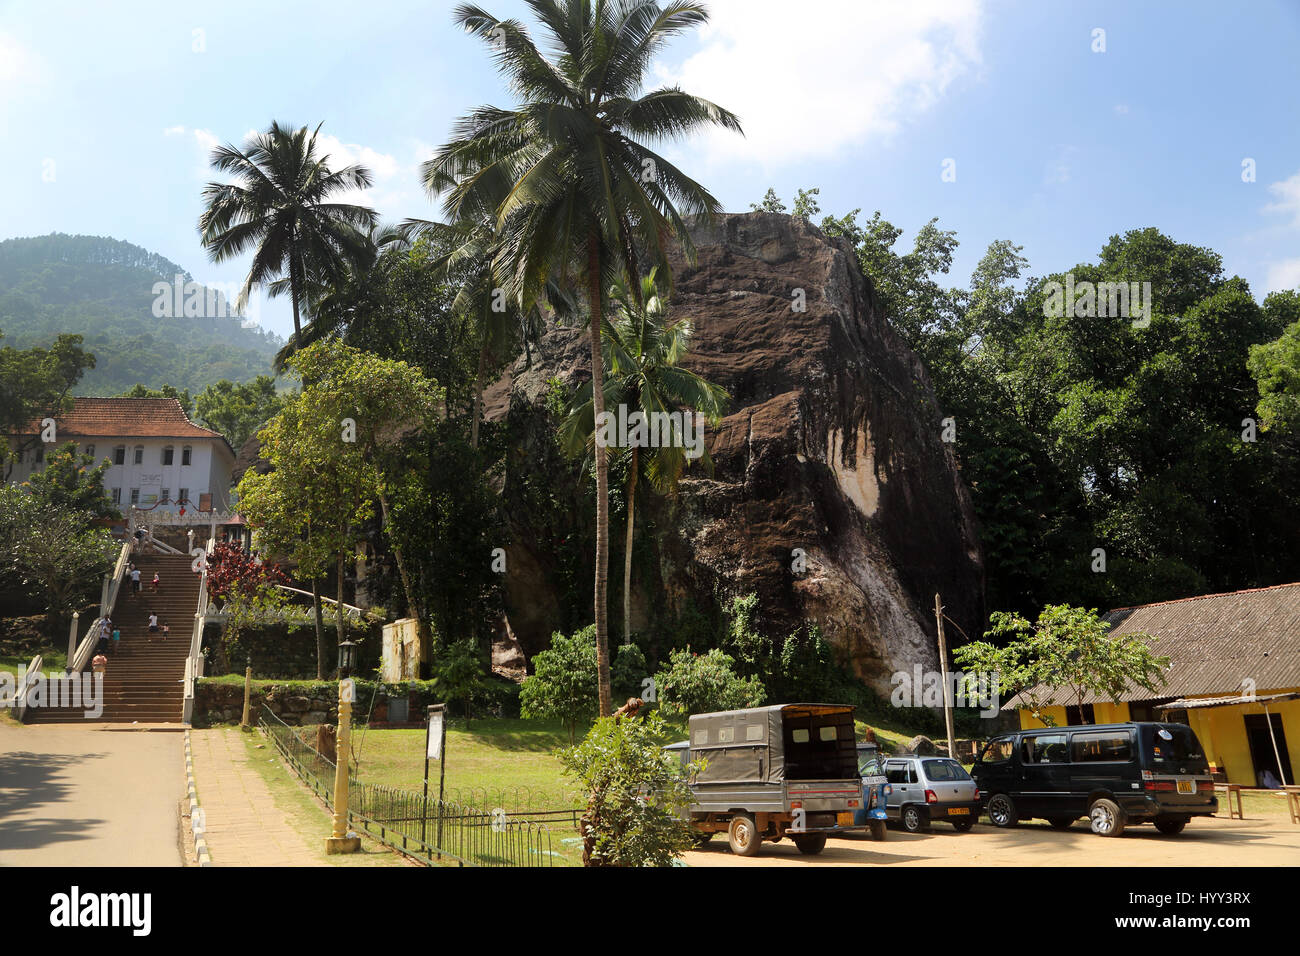 Aluviharaya grotta di roccia Tempio Sri Lanka Matale District Kandy-Dambulla autostrada scale che portano al livello internazionale libreria buddista e Sri Buddhaghosa Eng Foto Stock